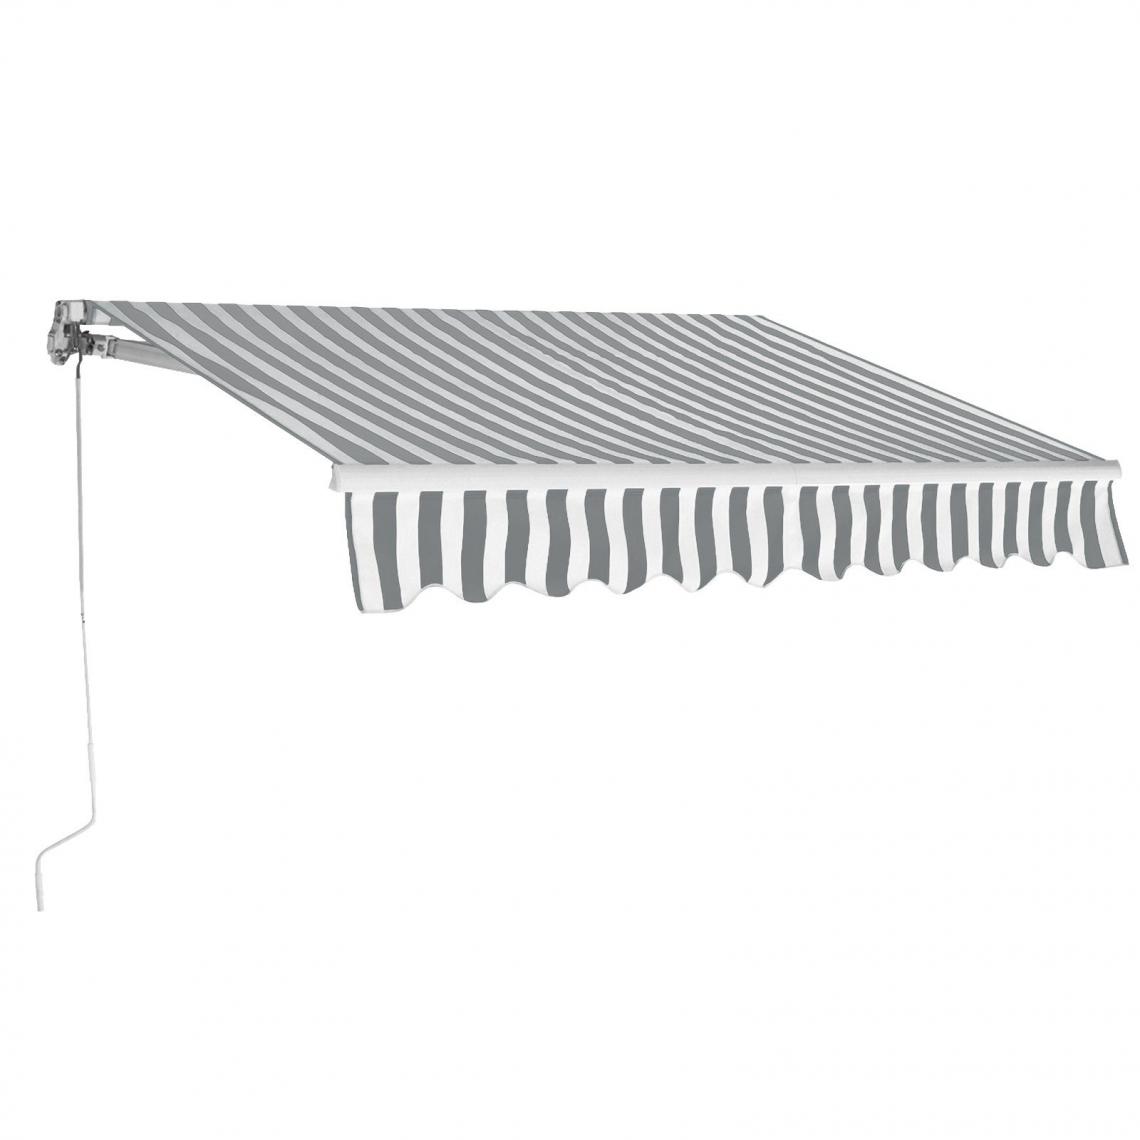 Helloshop26 - Store banne rétractable 3 x 2,5 m avec tissu résistant aux UV et à l'eau cadre en aluminium pour terrasse balcon noir blanc 20_0001114 - Store banne